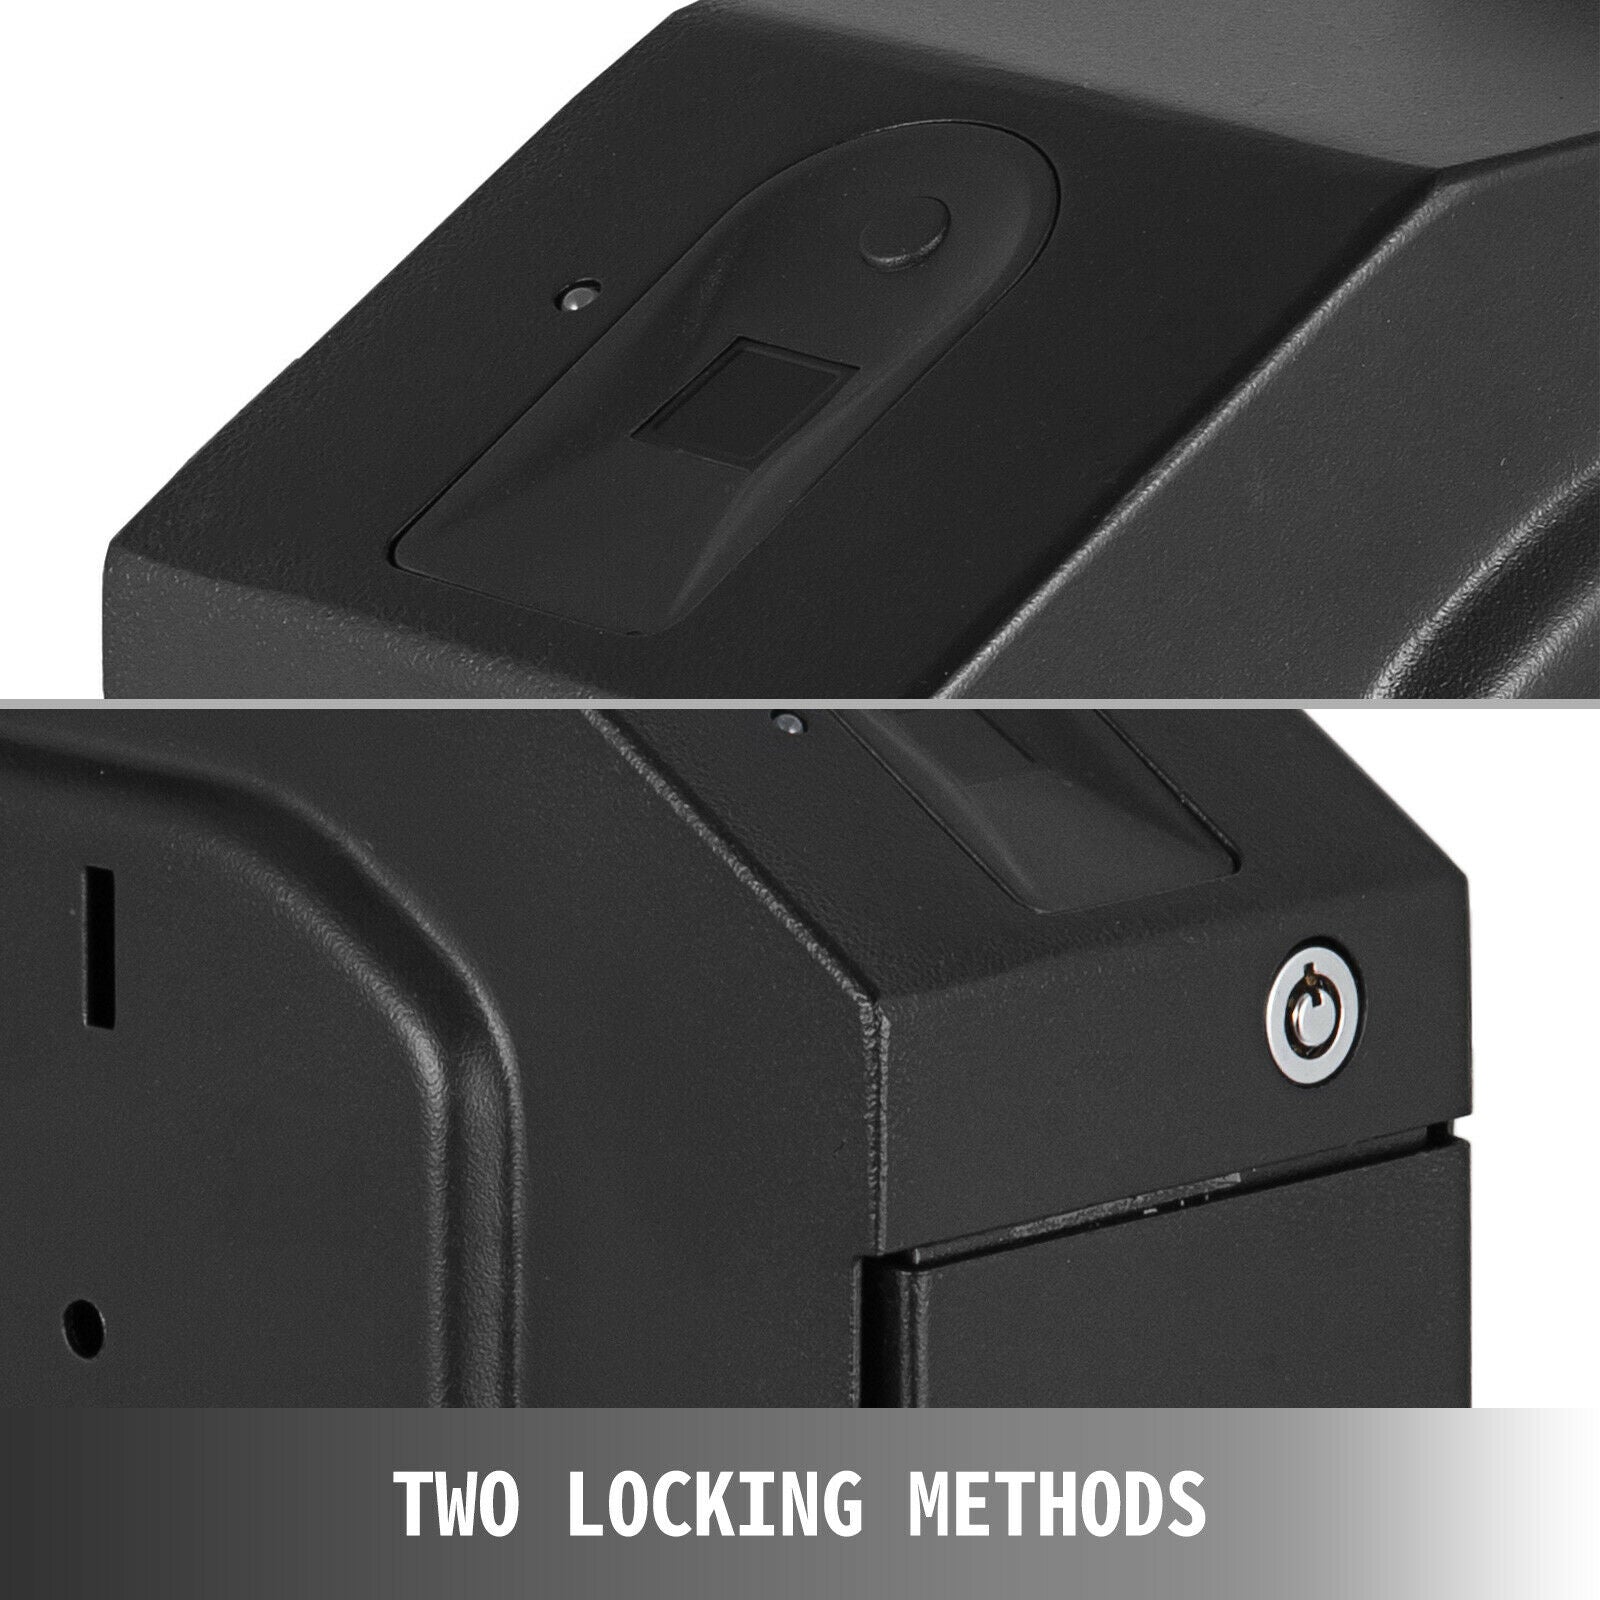 Biometrisk pistolvärdeskåp, kapacitet för 120 fingrar, lösenordsinmatning, stålkonstruktion